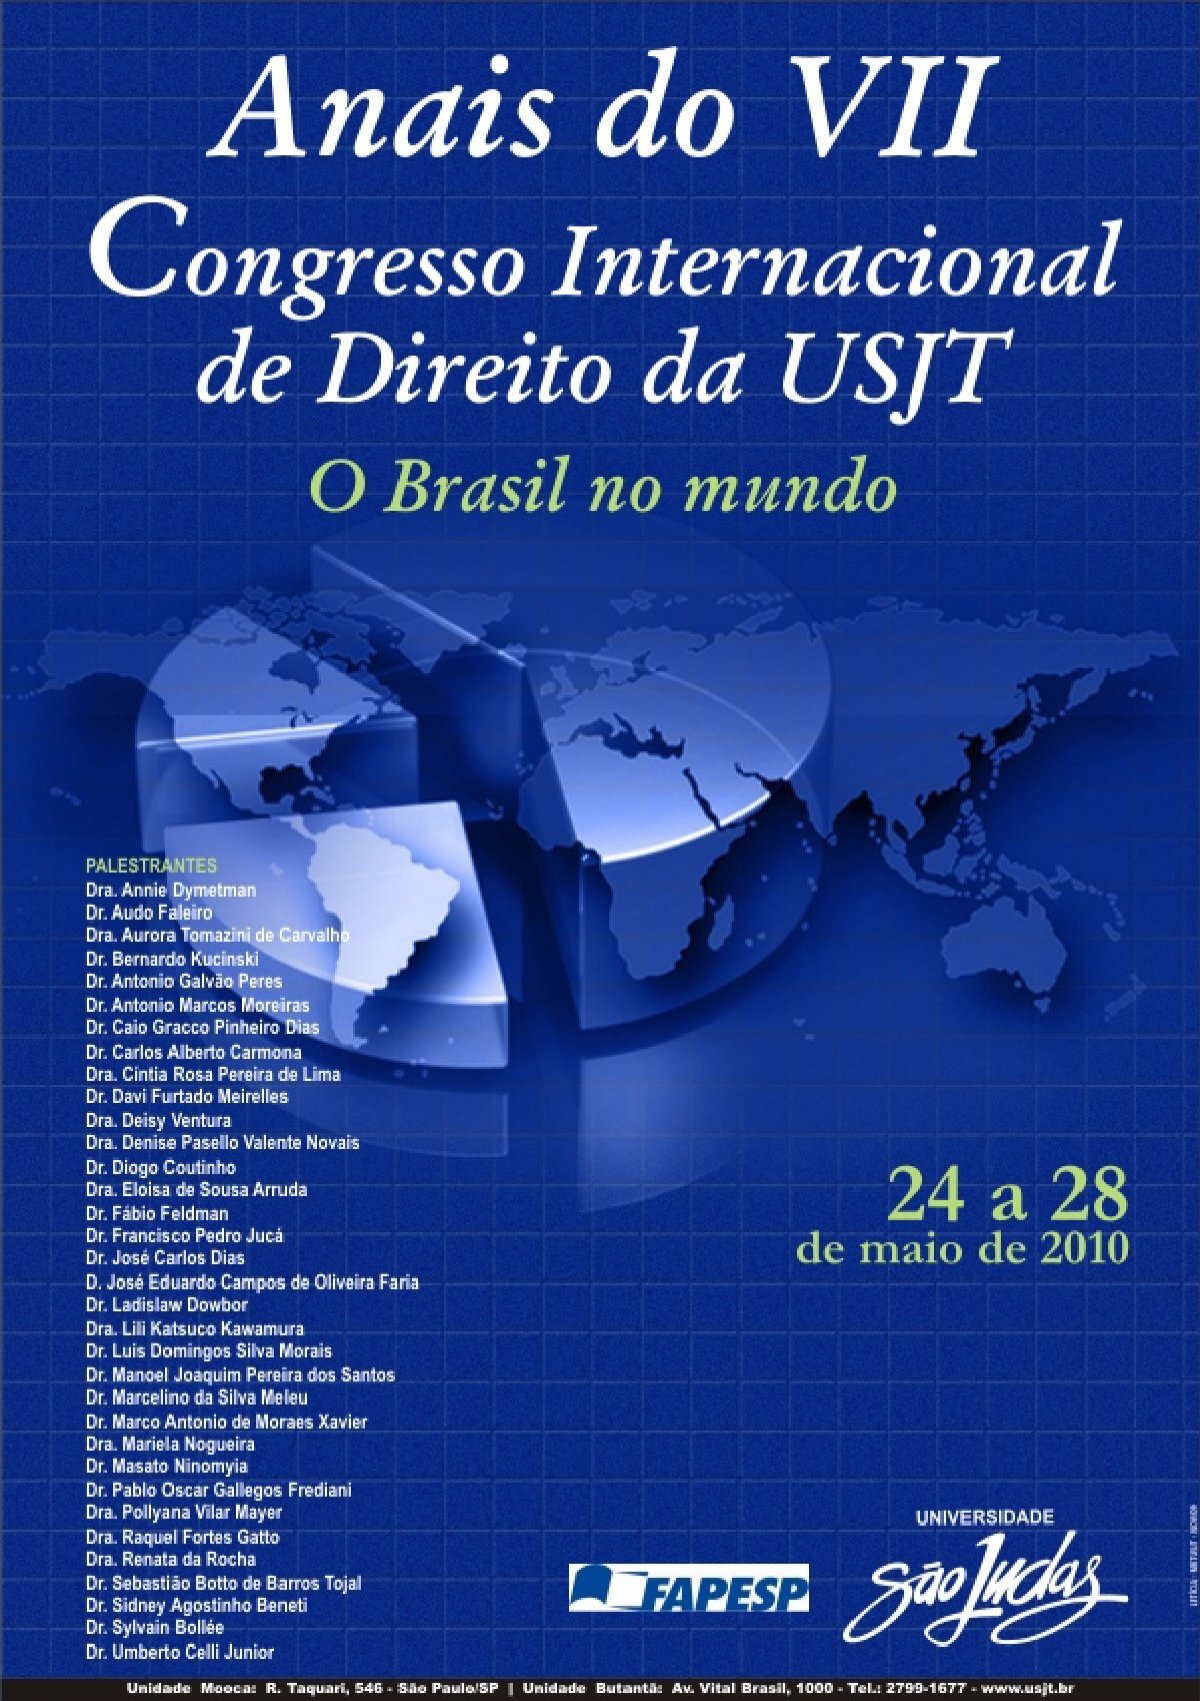 SÃ£o Paulo, 02 de dezembro de 2010 - Universidade SÃ£o Judas Tadeu